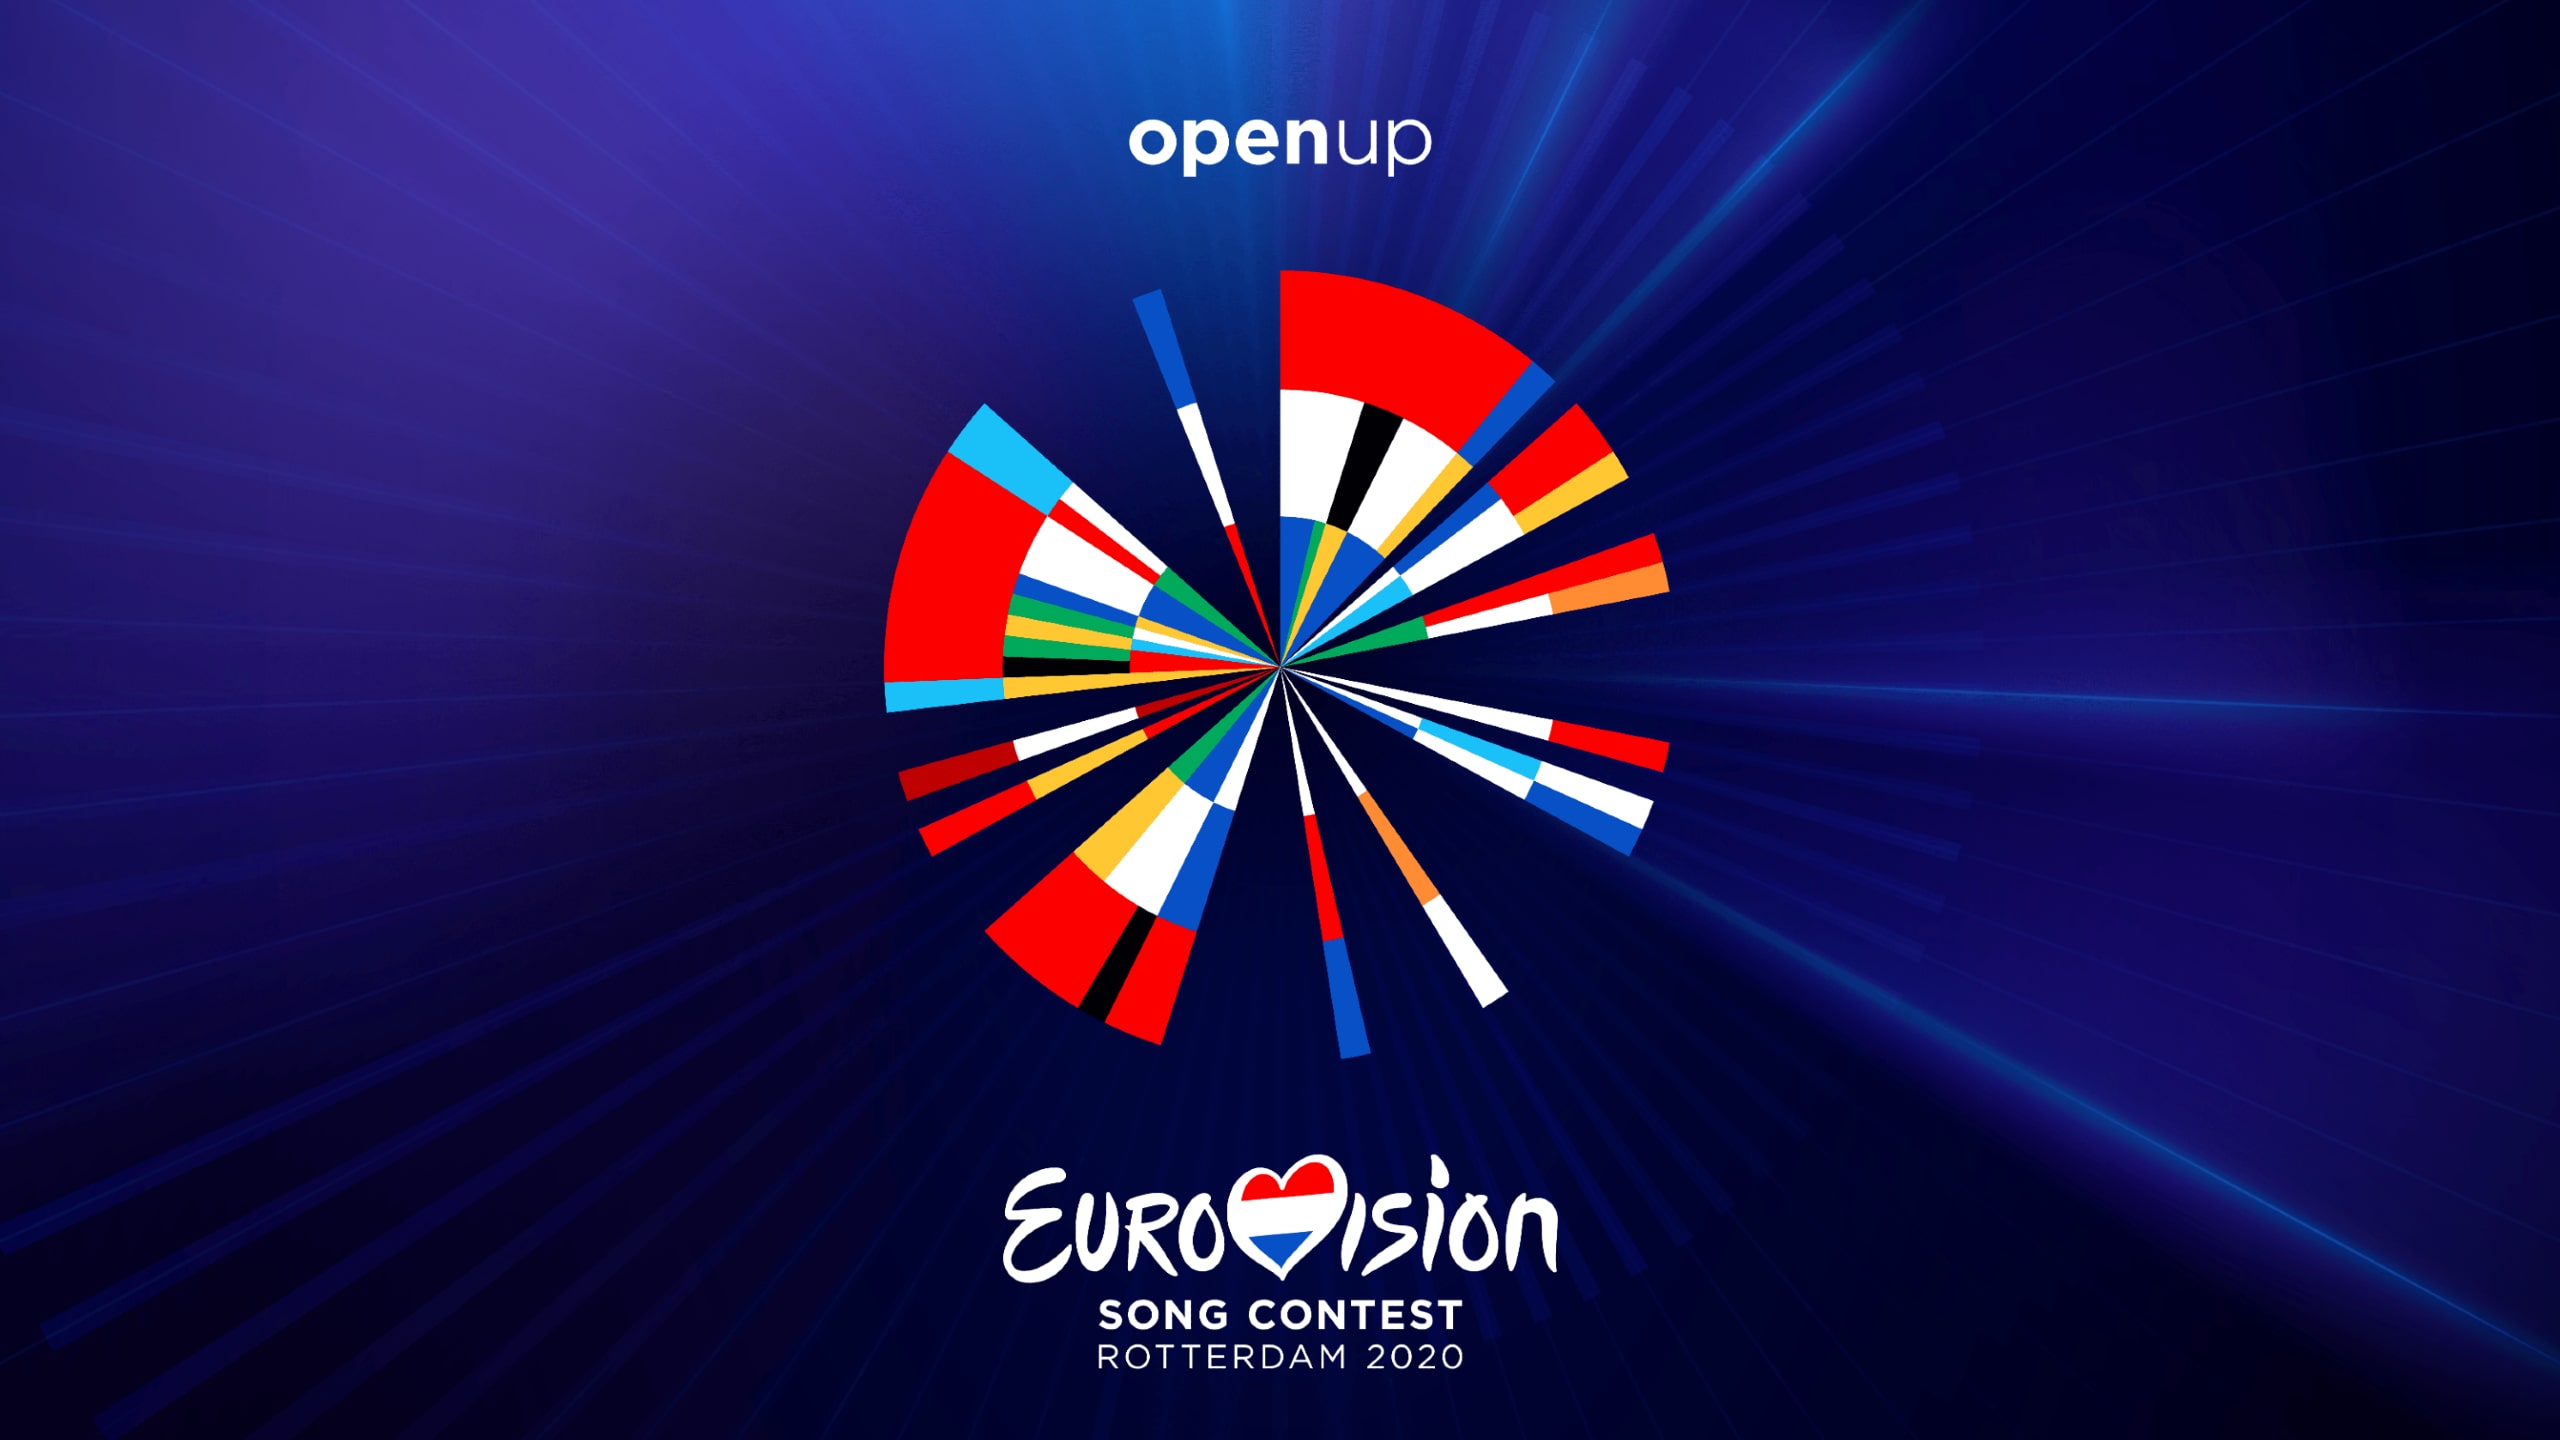 ユーロビジョン 全41カ国代表曲 今年のテーマは Open Up Voice 洋楽